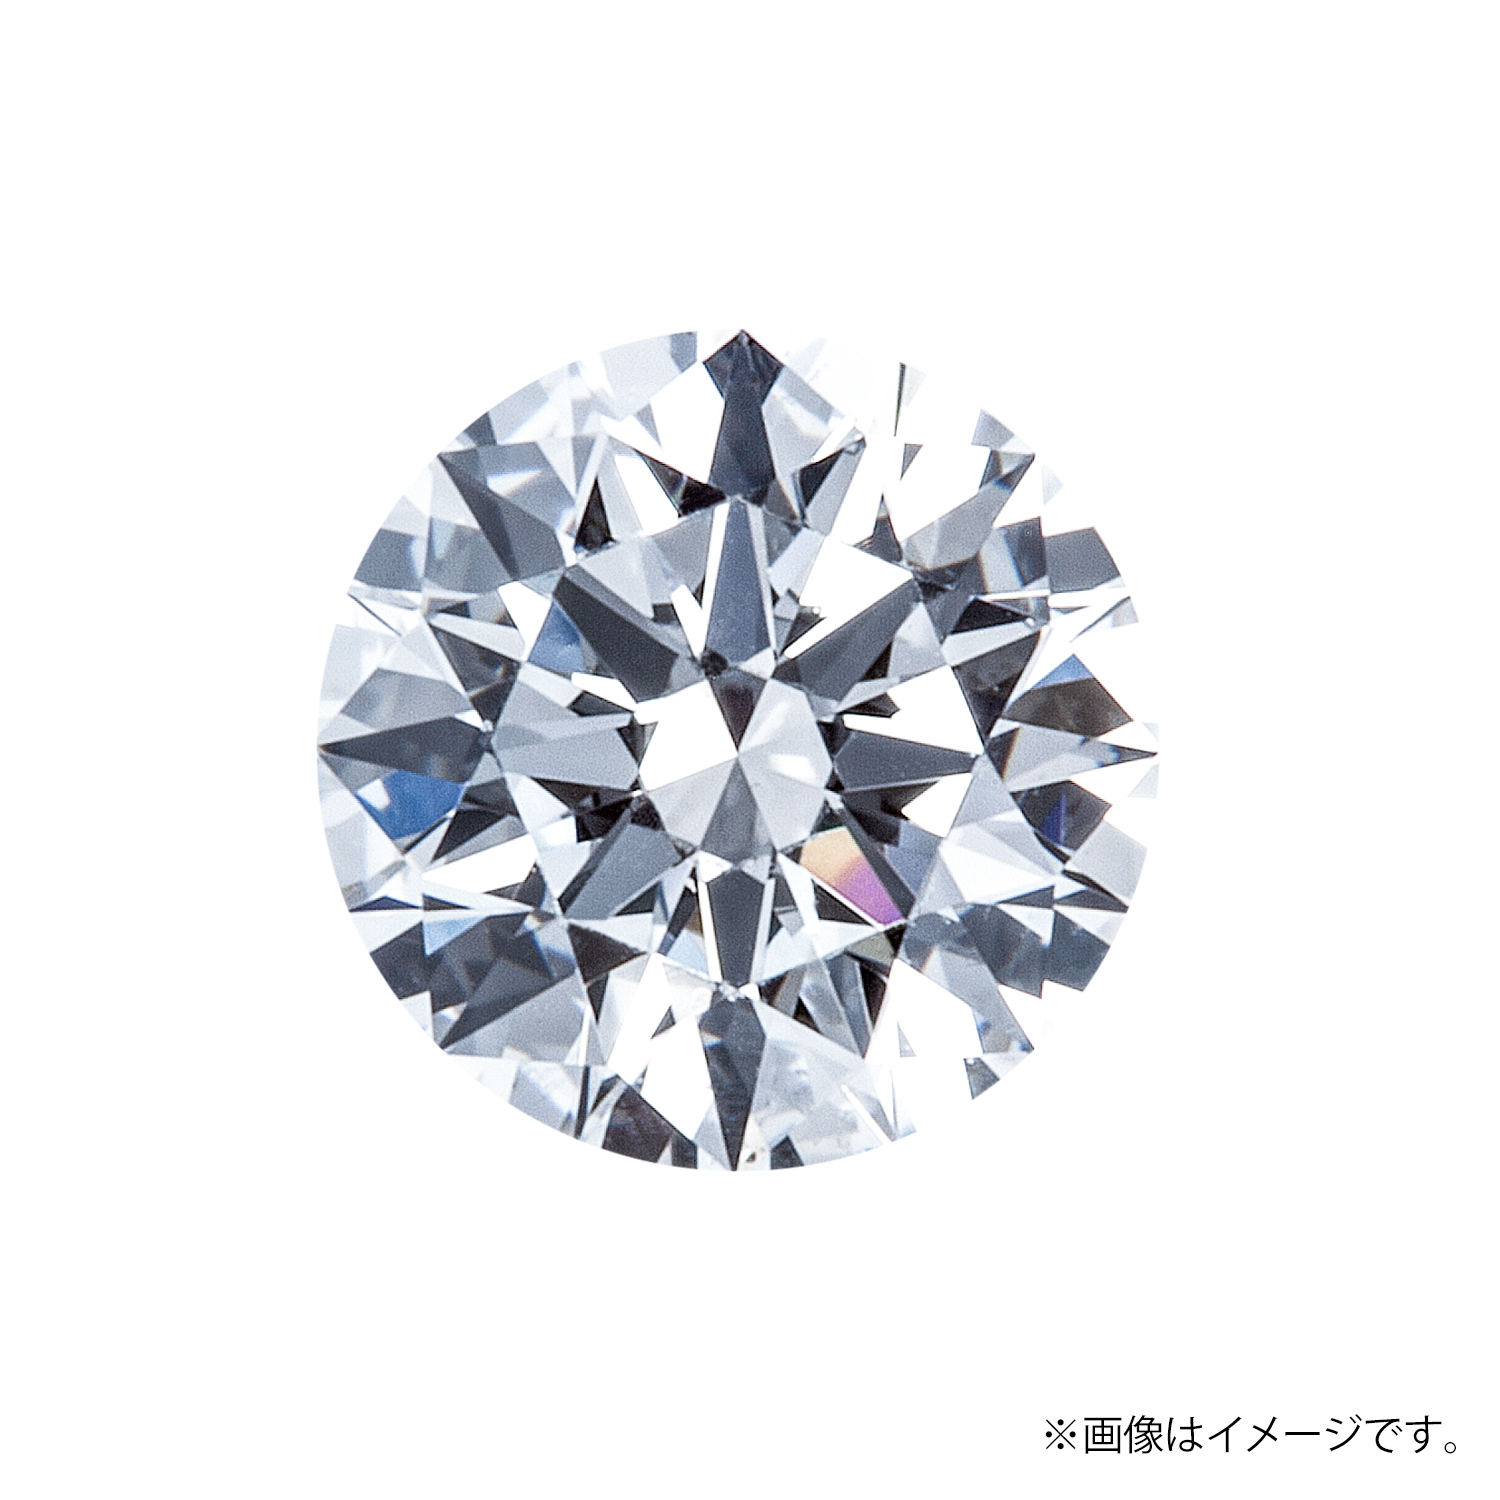 1.013ct Round ダイヤモンド / G / SI2 / EXCELLENT